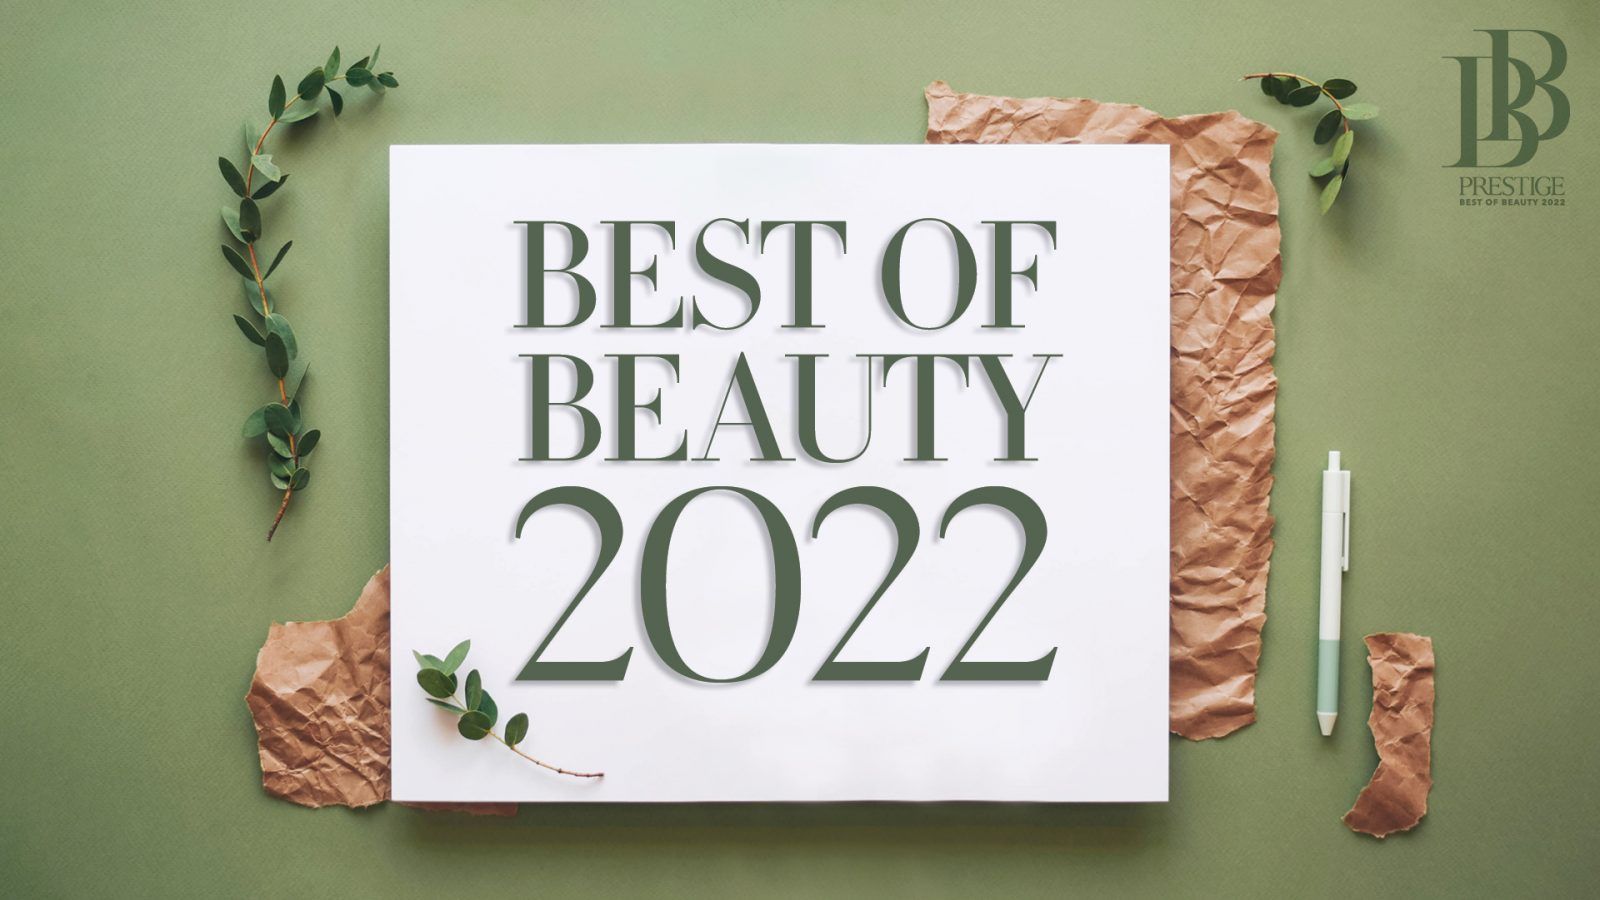 Best of Beauty 2022: Top Exfoliators